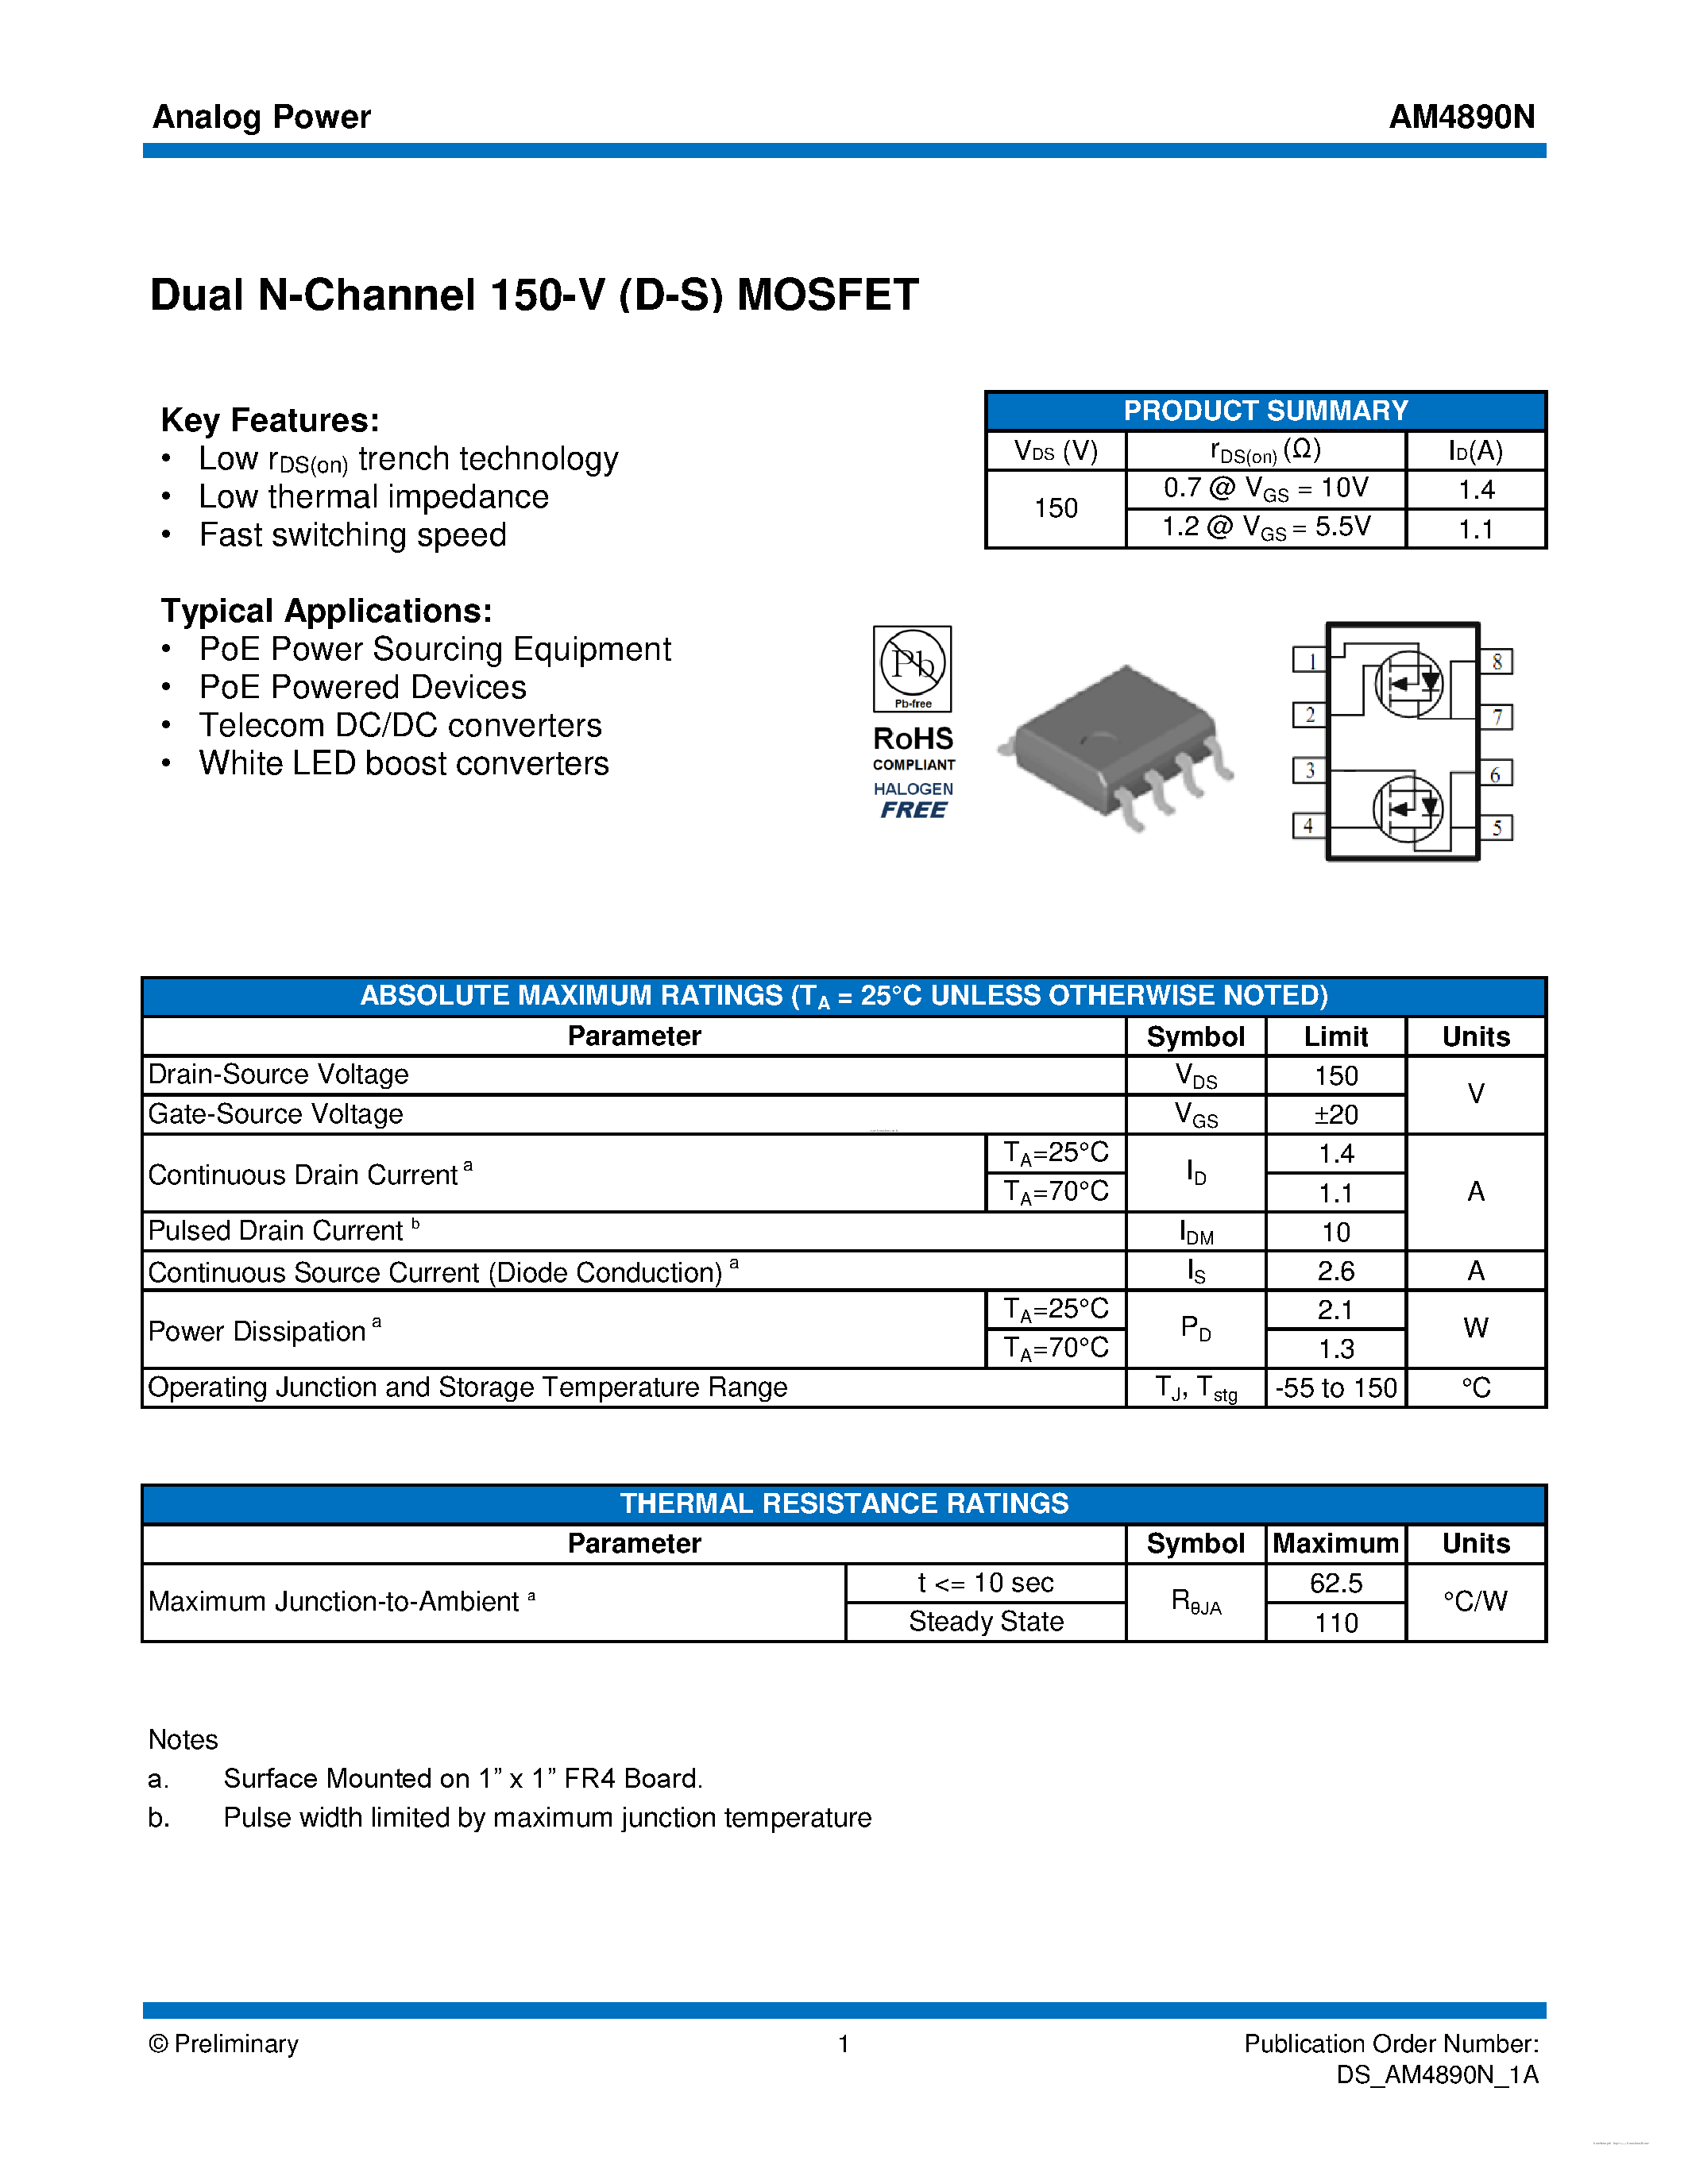 Даташит AM4890N - MOSFET страница 1